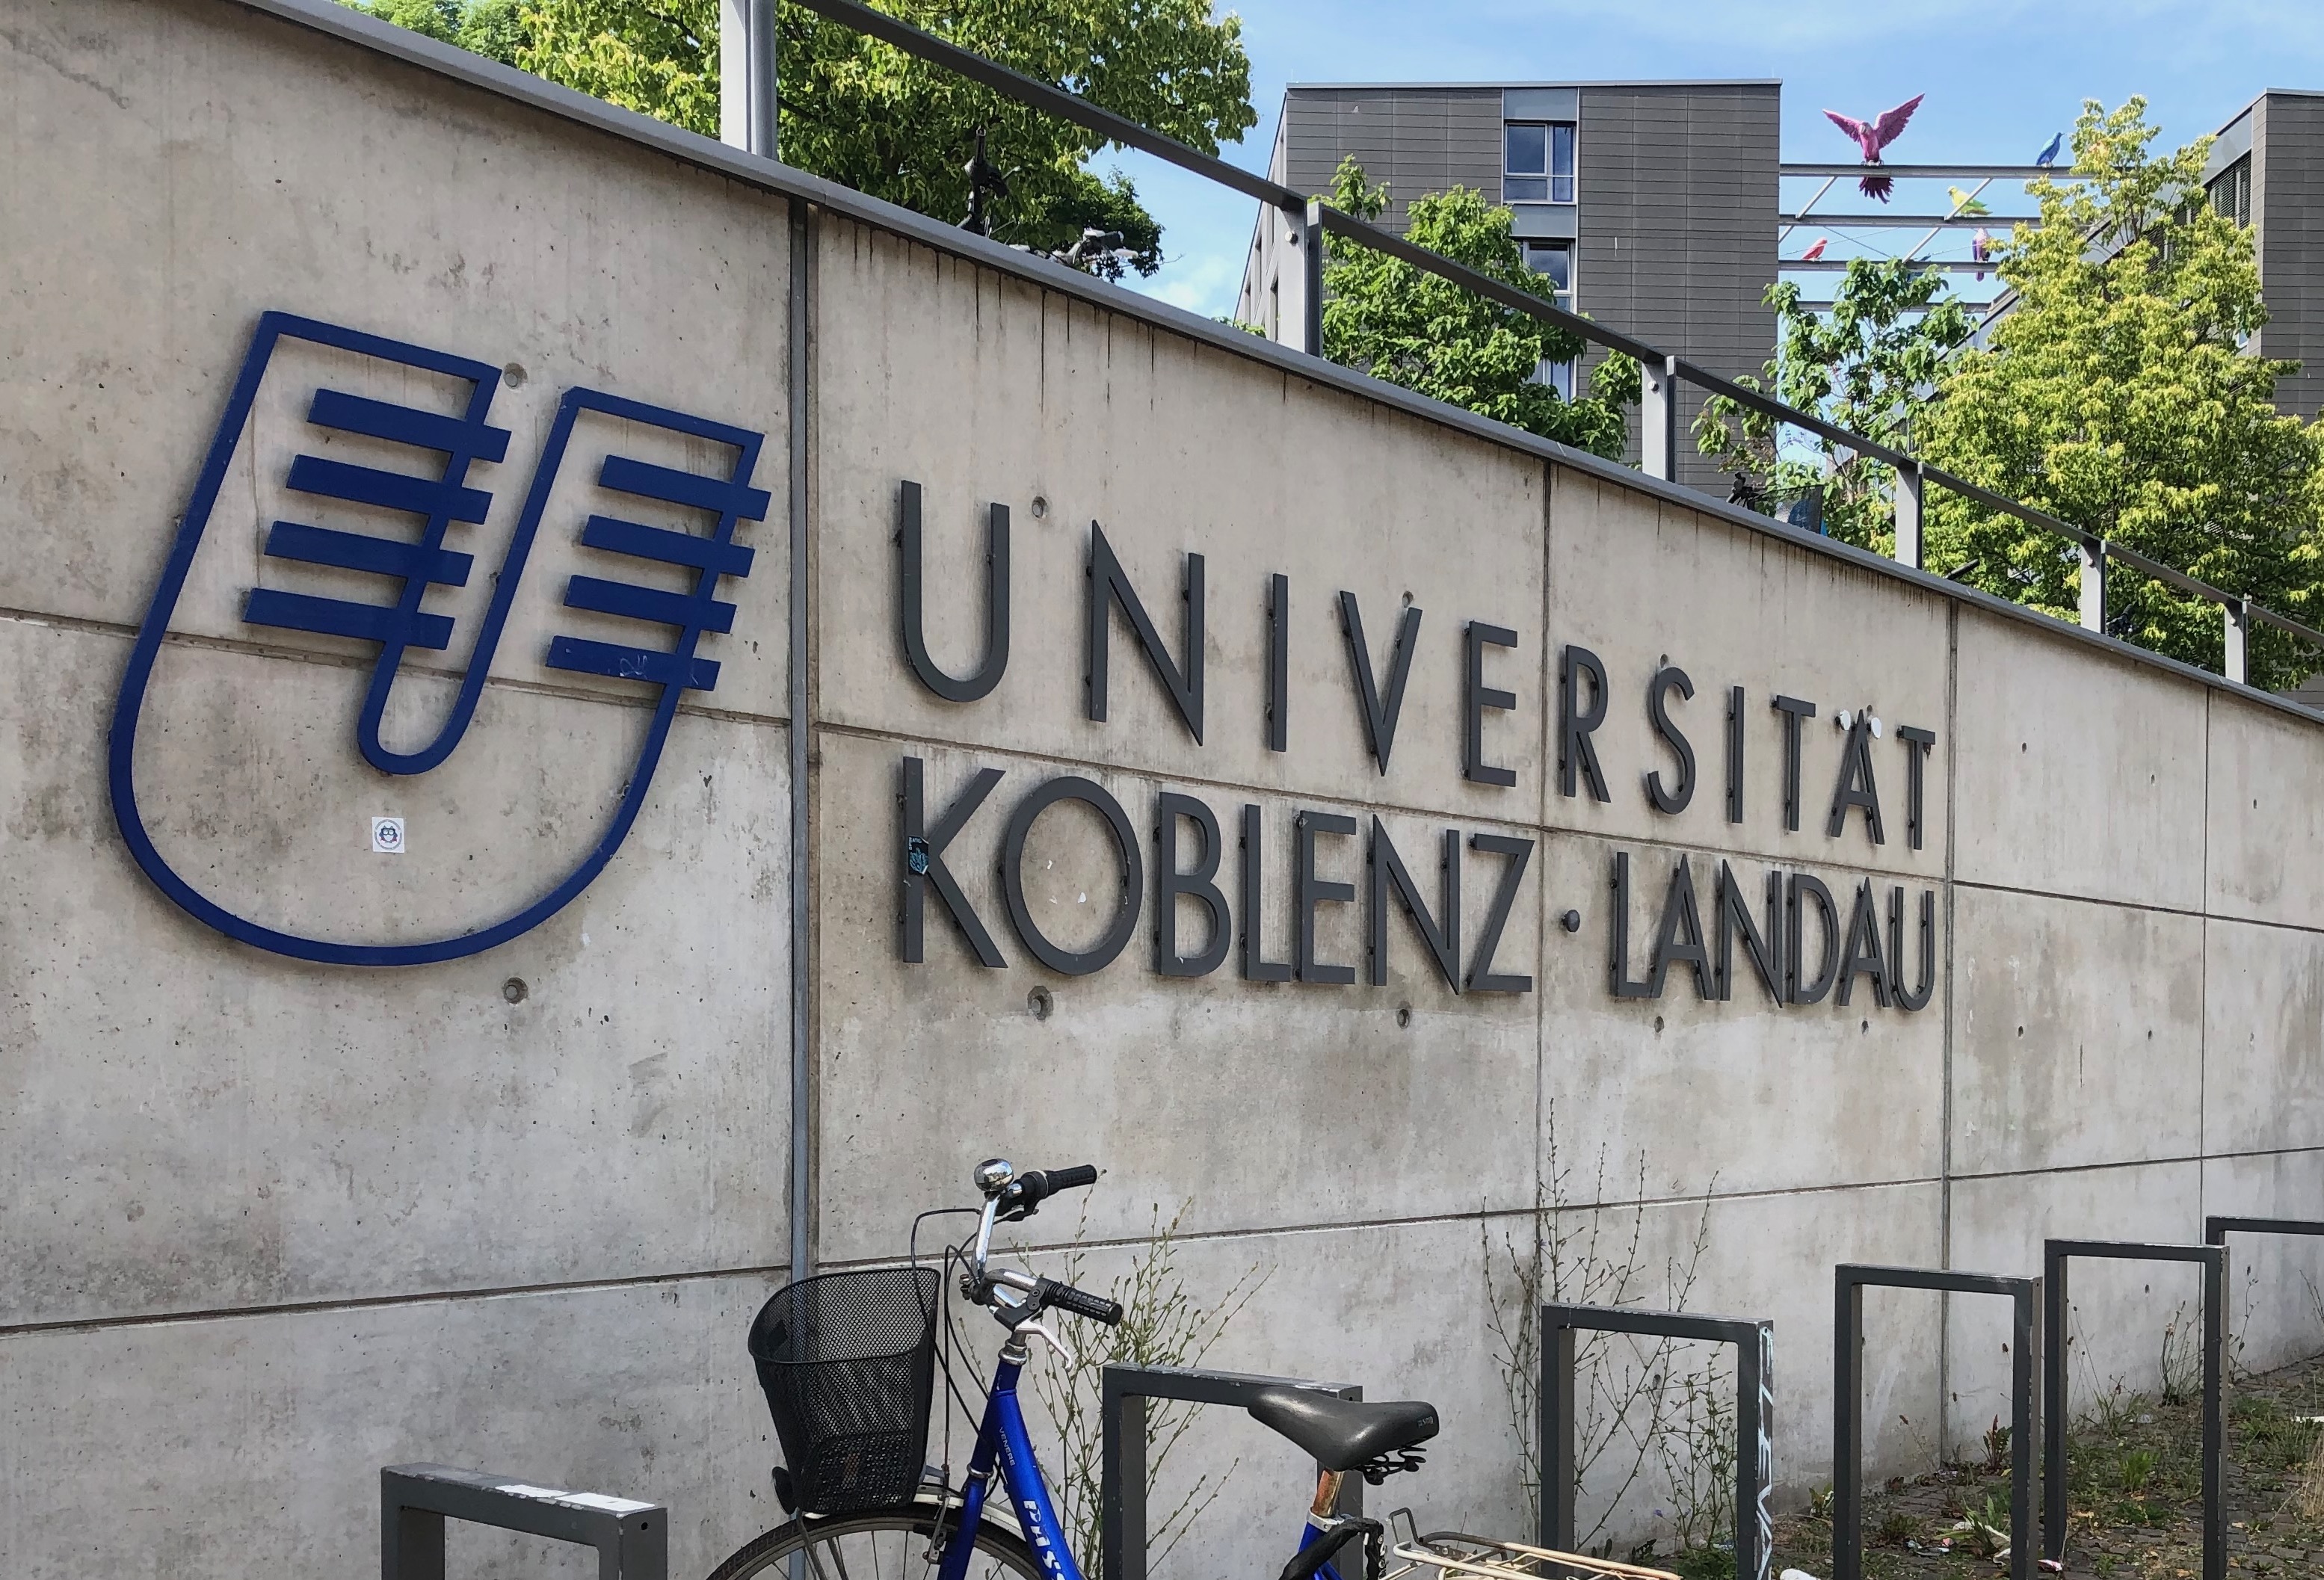 New collaboration with University of Koblenz-Landau